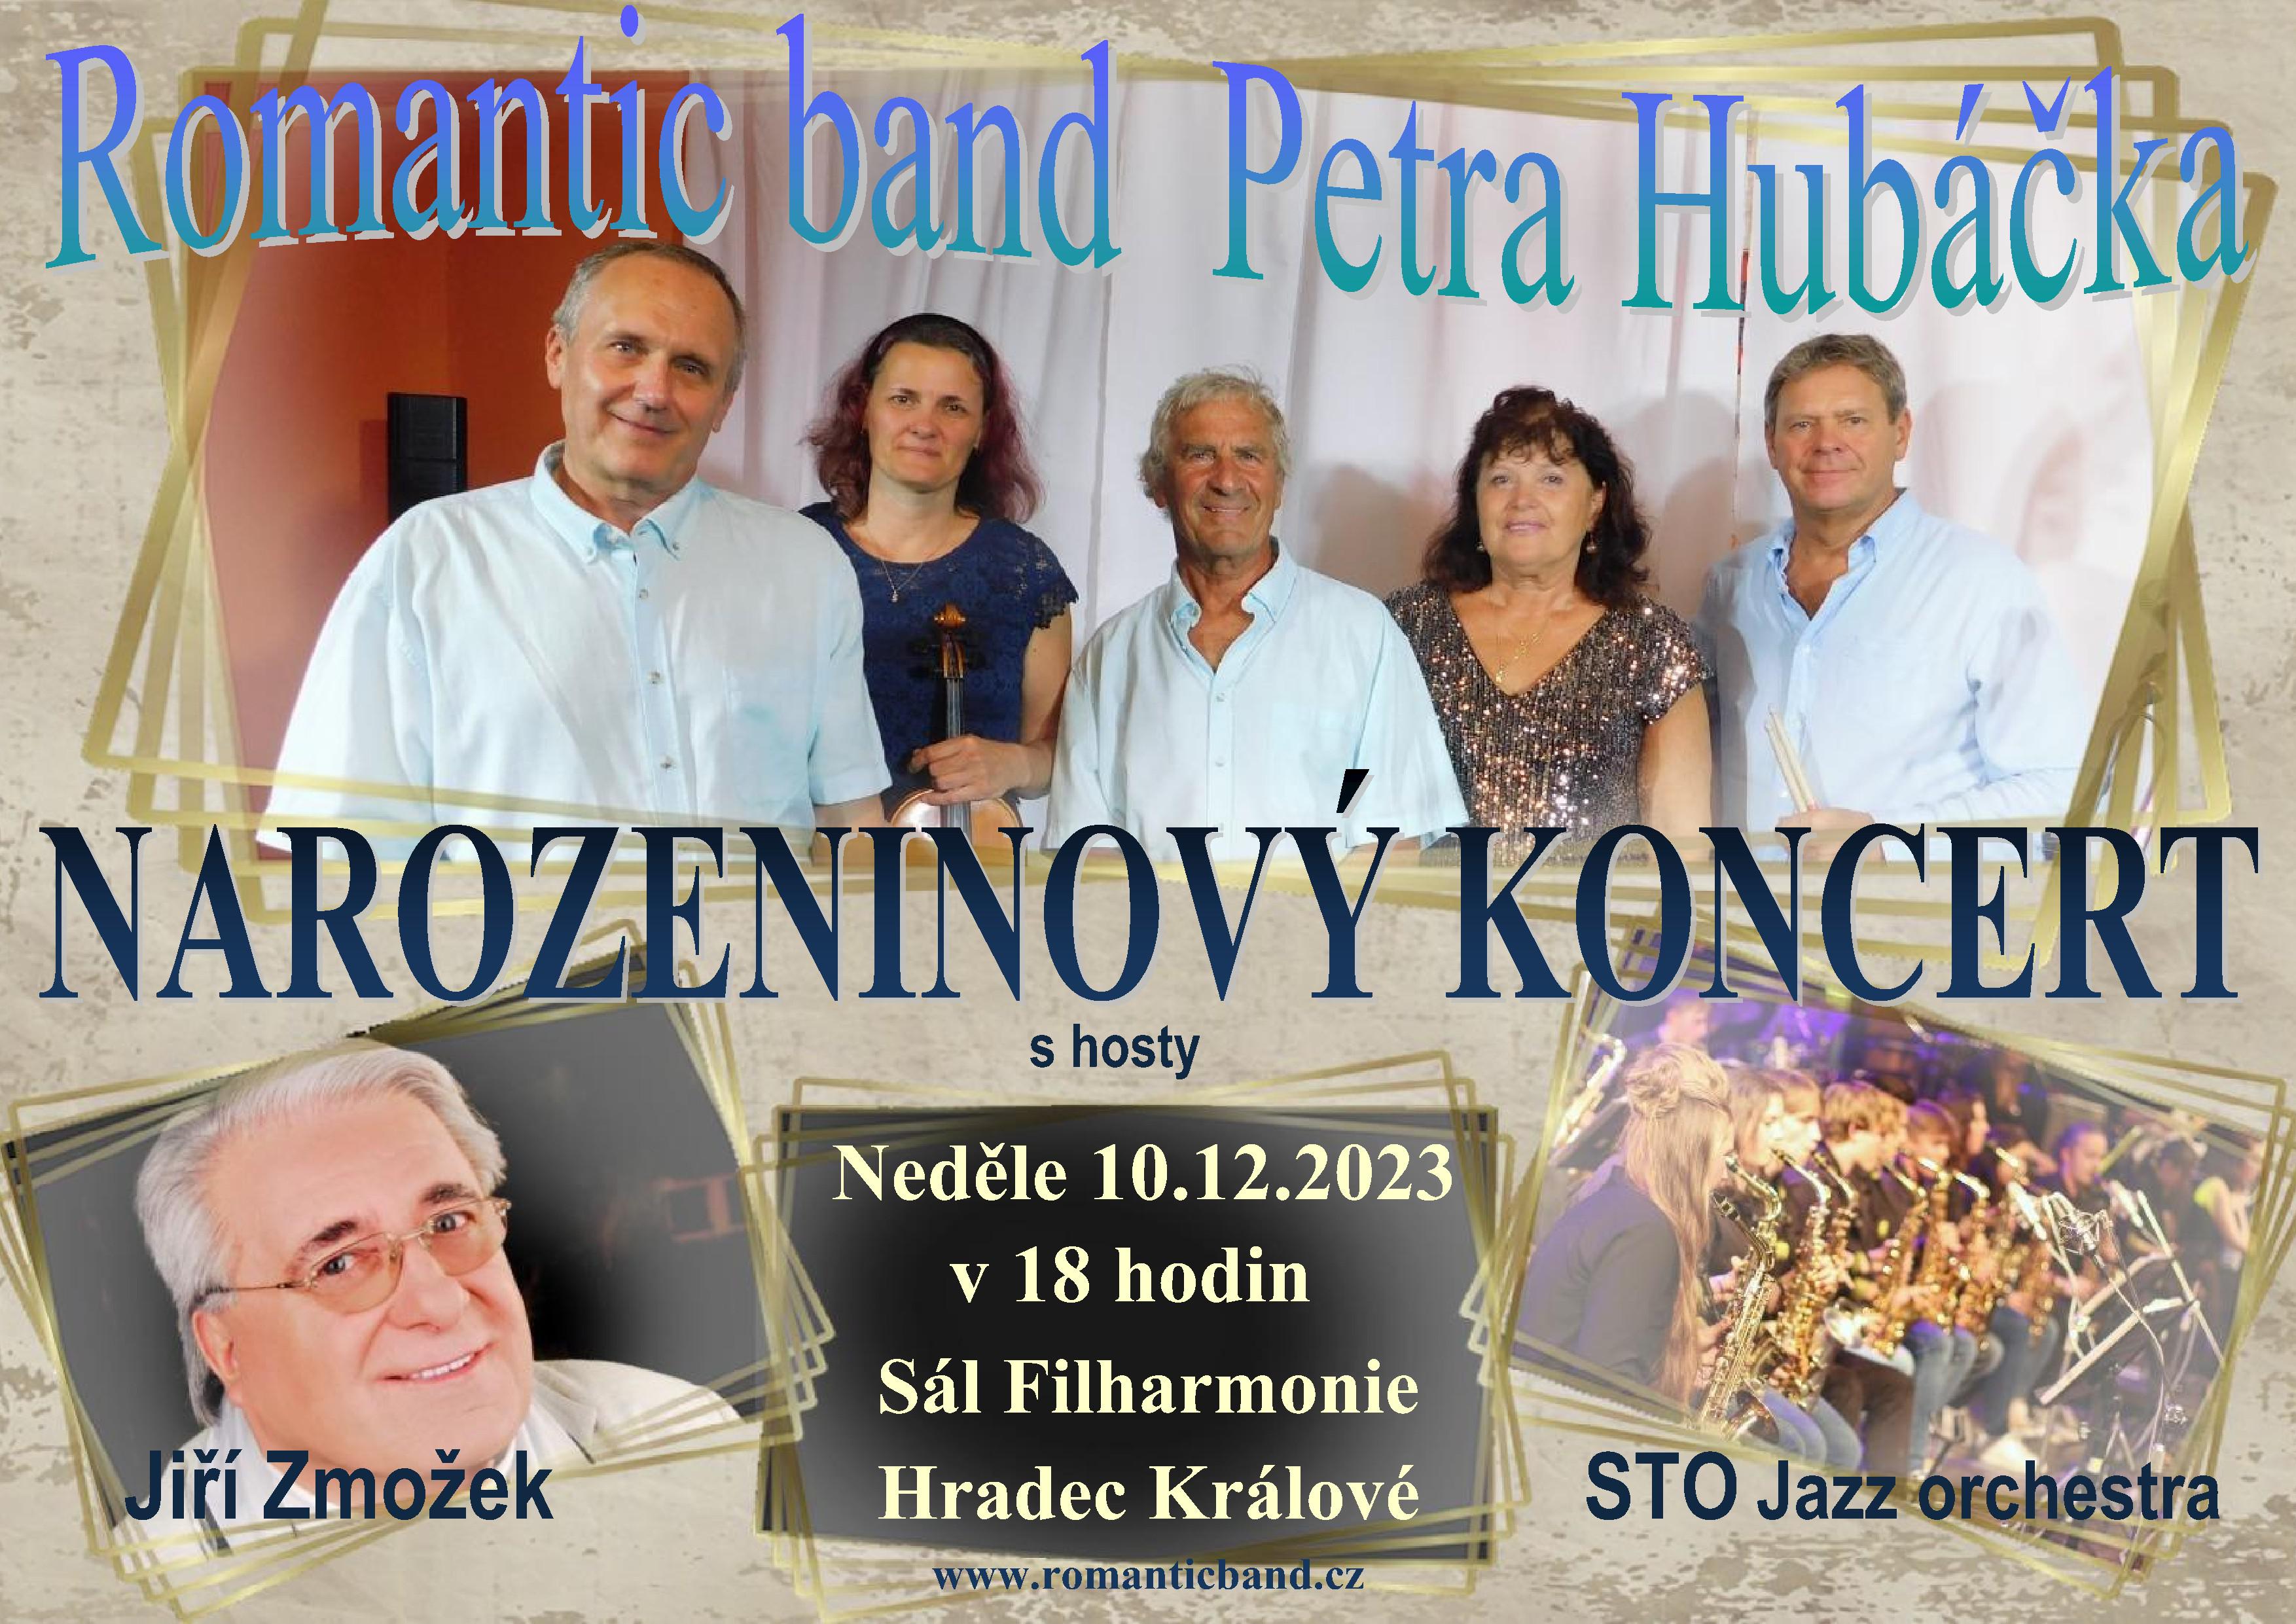 Romantic band Petra Hubáčka - narozeninový koncert s hosty